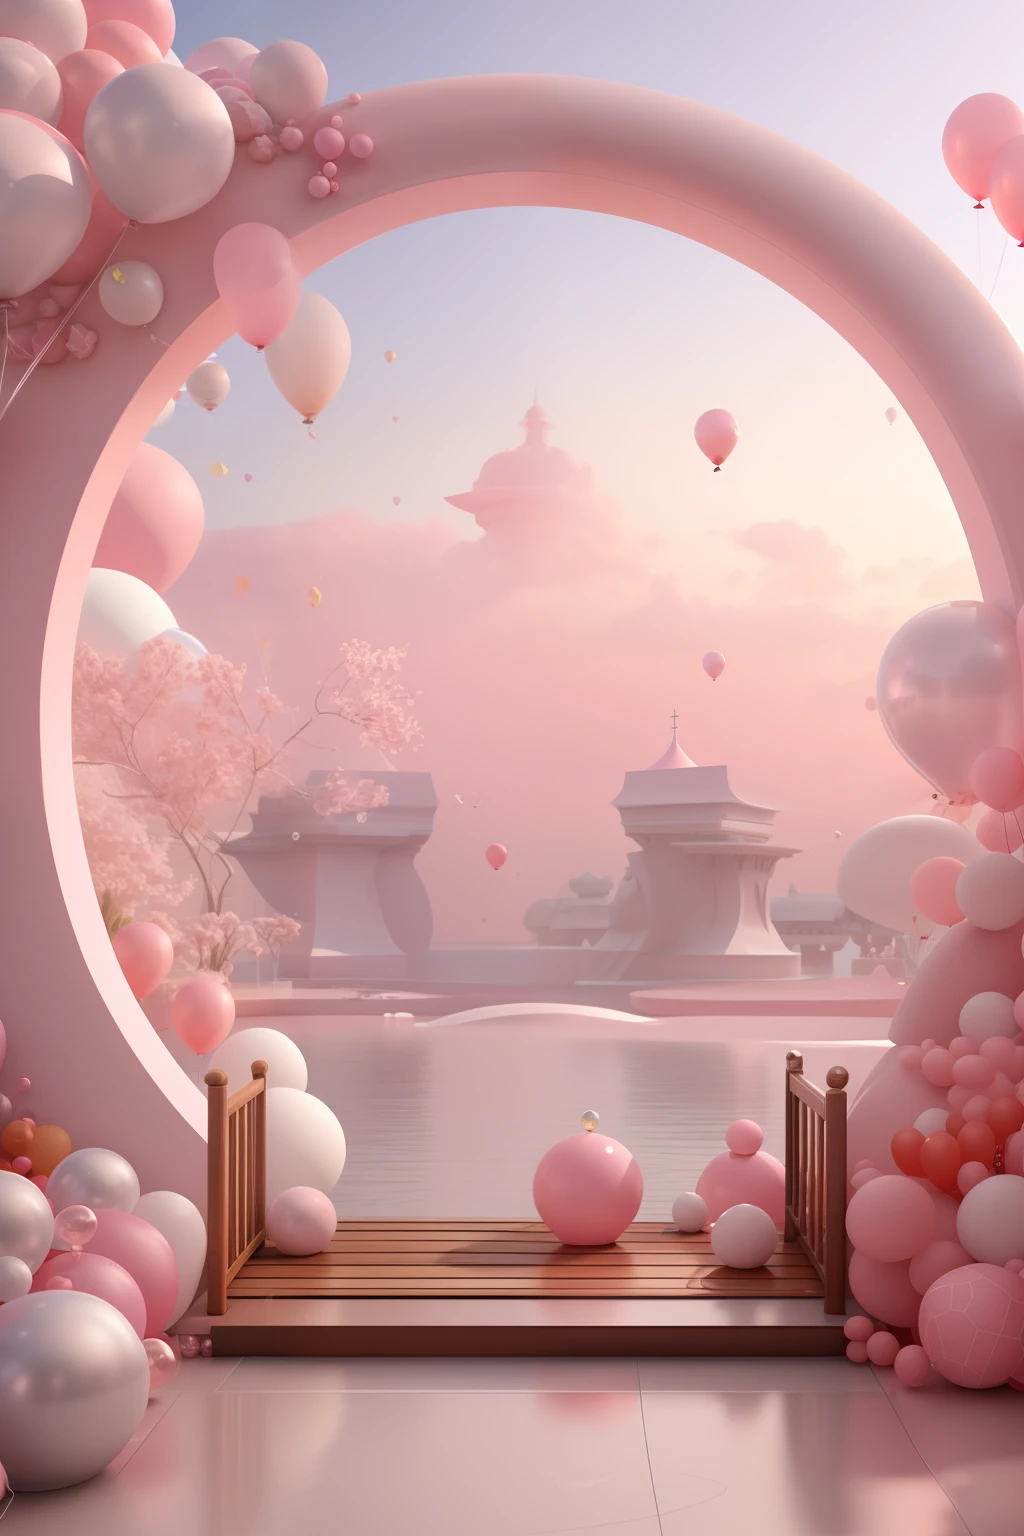 有一個粉紅色和白色的拱門，有氣球和長凳, 粉色禪風格, 粉紅色風景, 夢境場景, 看著粉紅色的海洋, 3D 渲染風格化, 3d 渲染风格, 超現實 3D 渲染, 泡沫般的風景, 超現實的夢幻風景, 3D風格化場景, 風格化為 3D 渲染, 夢幻般的氛圍與戲劇